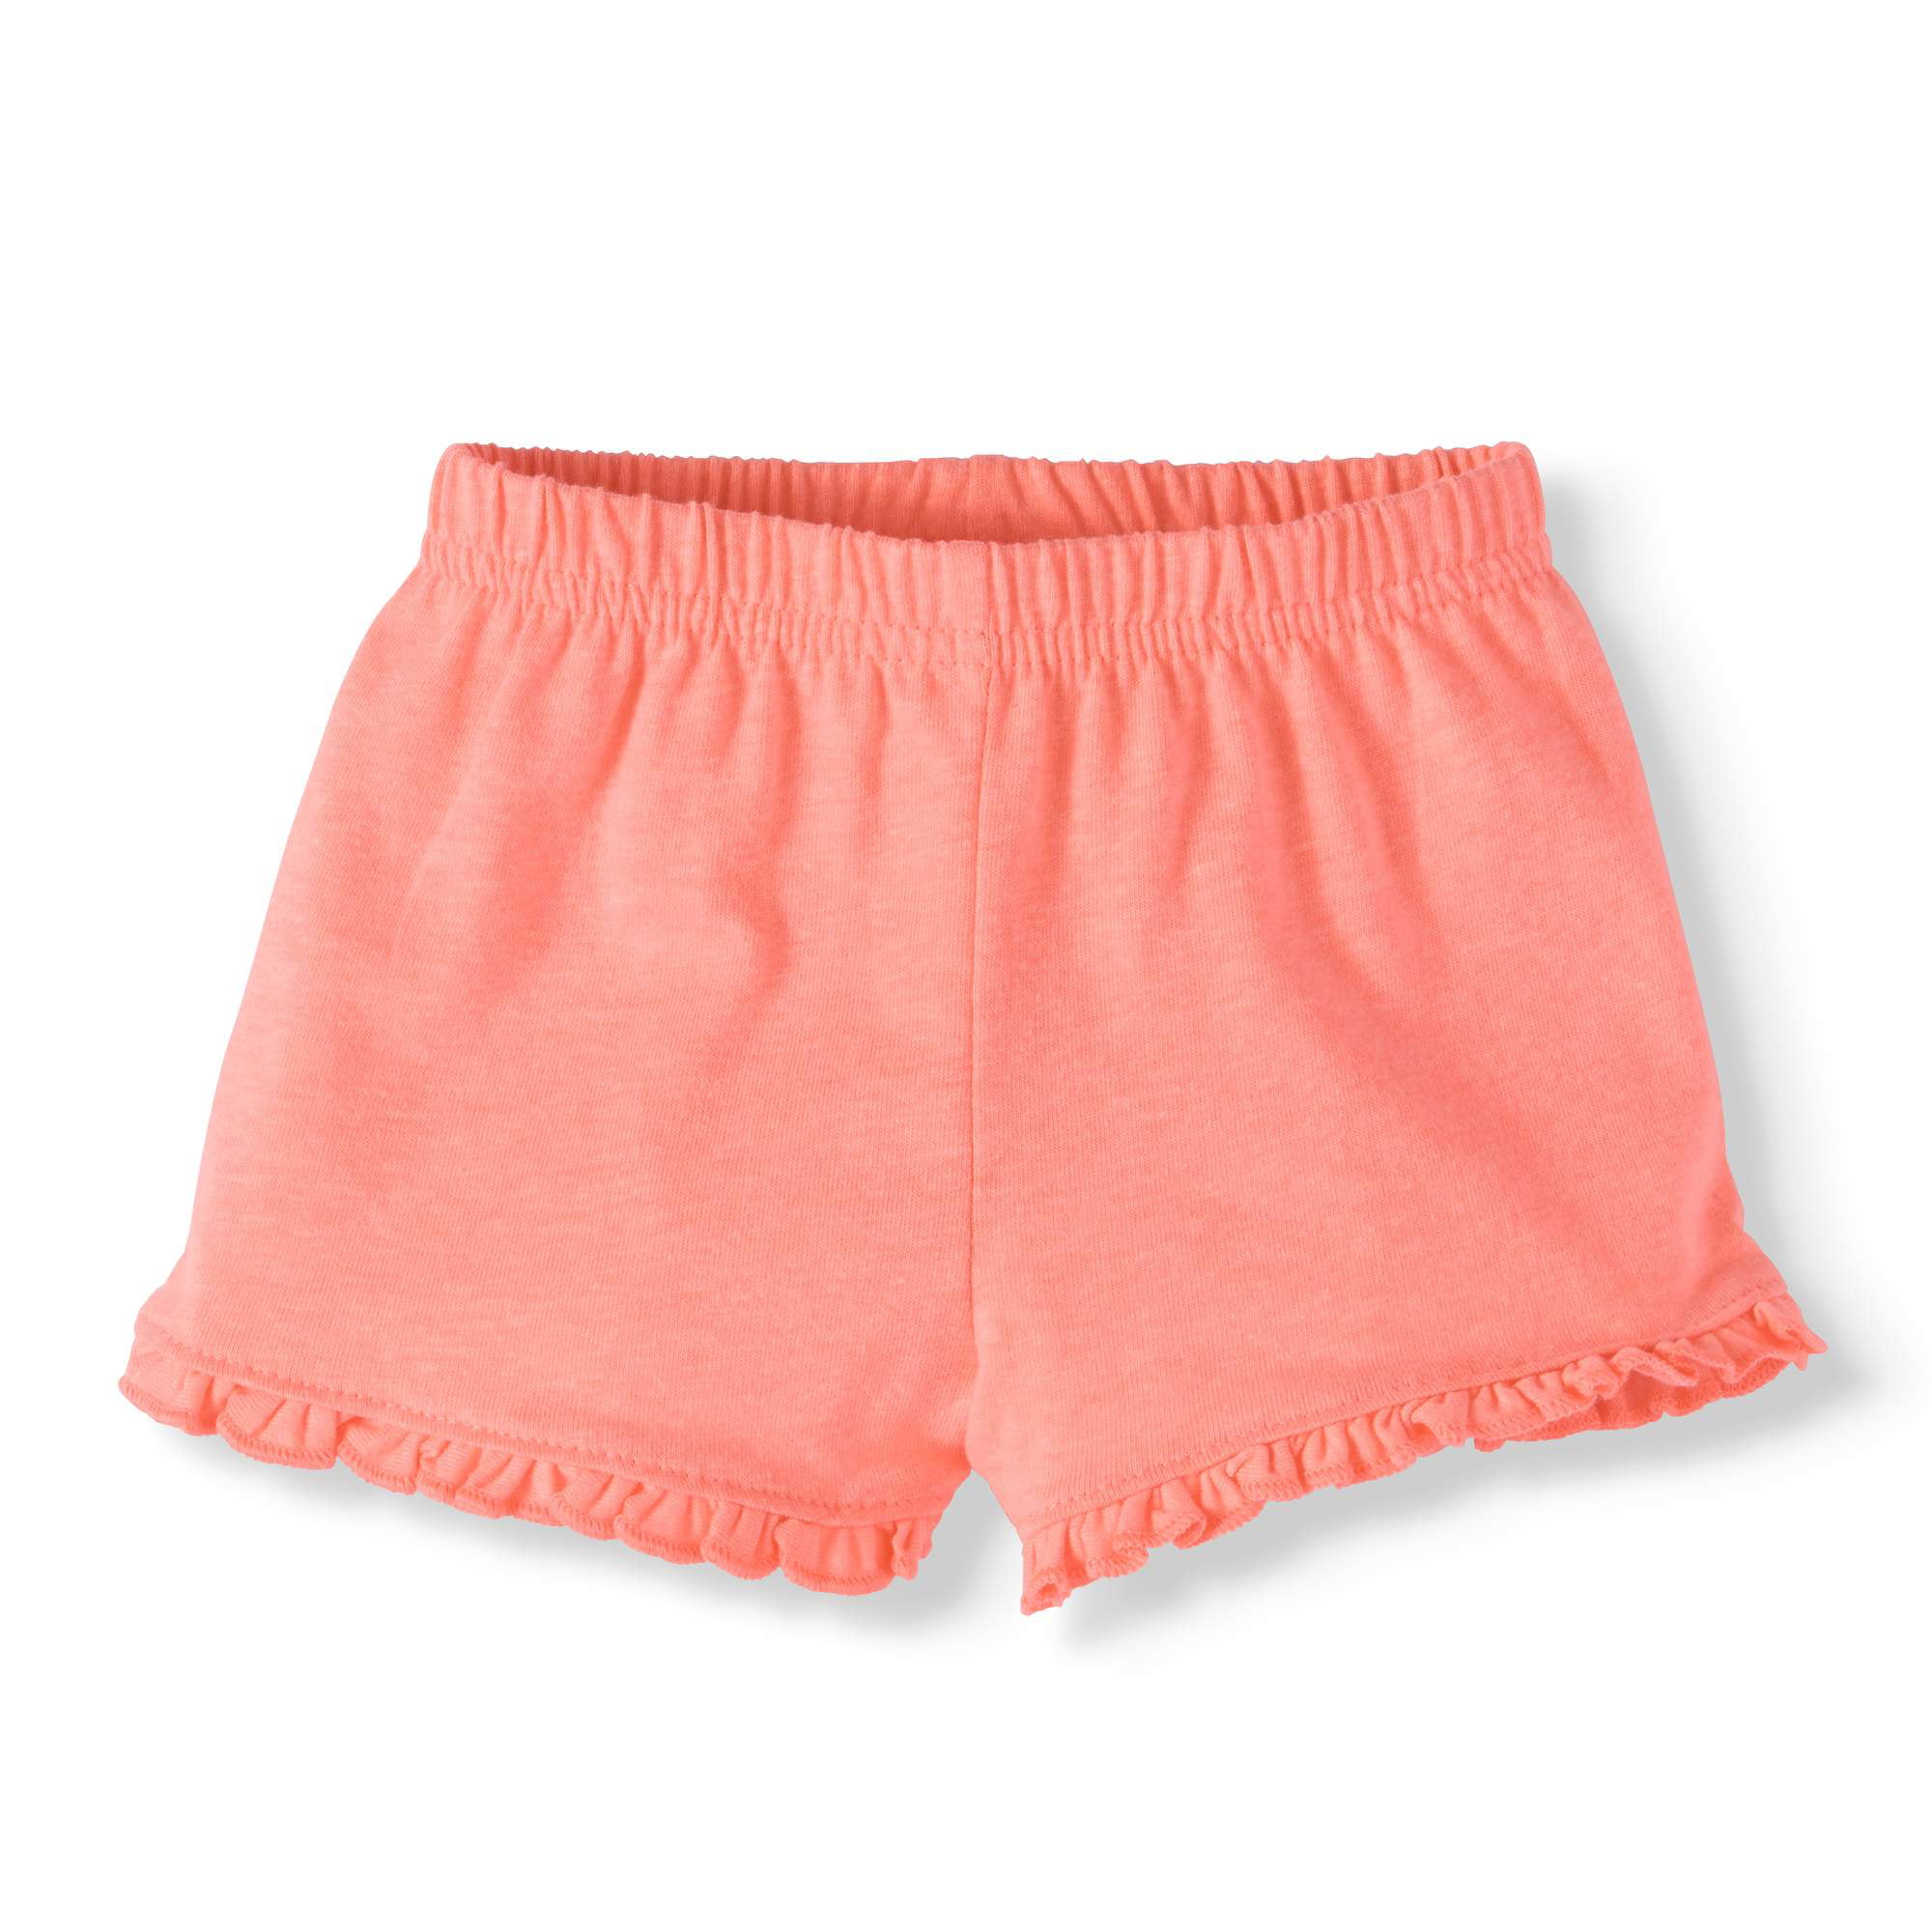 Garanimals Girls Solid Knit Lace Ruffle Shorts Size 6 